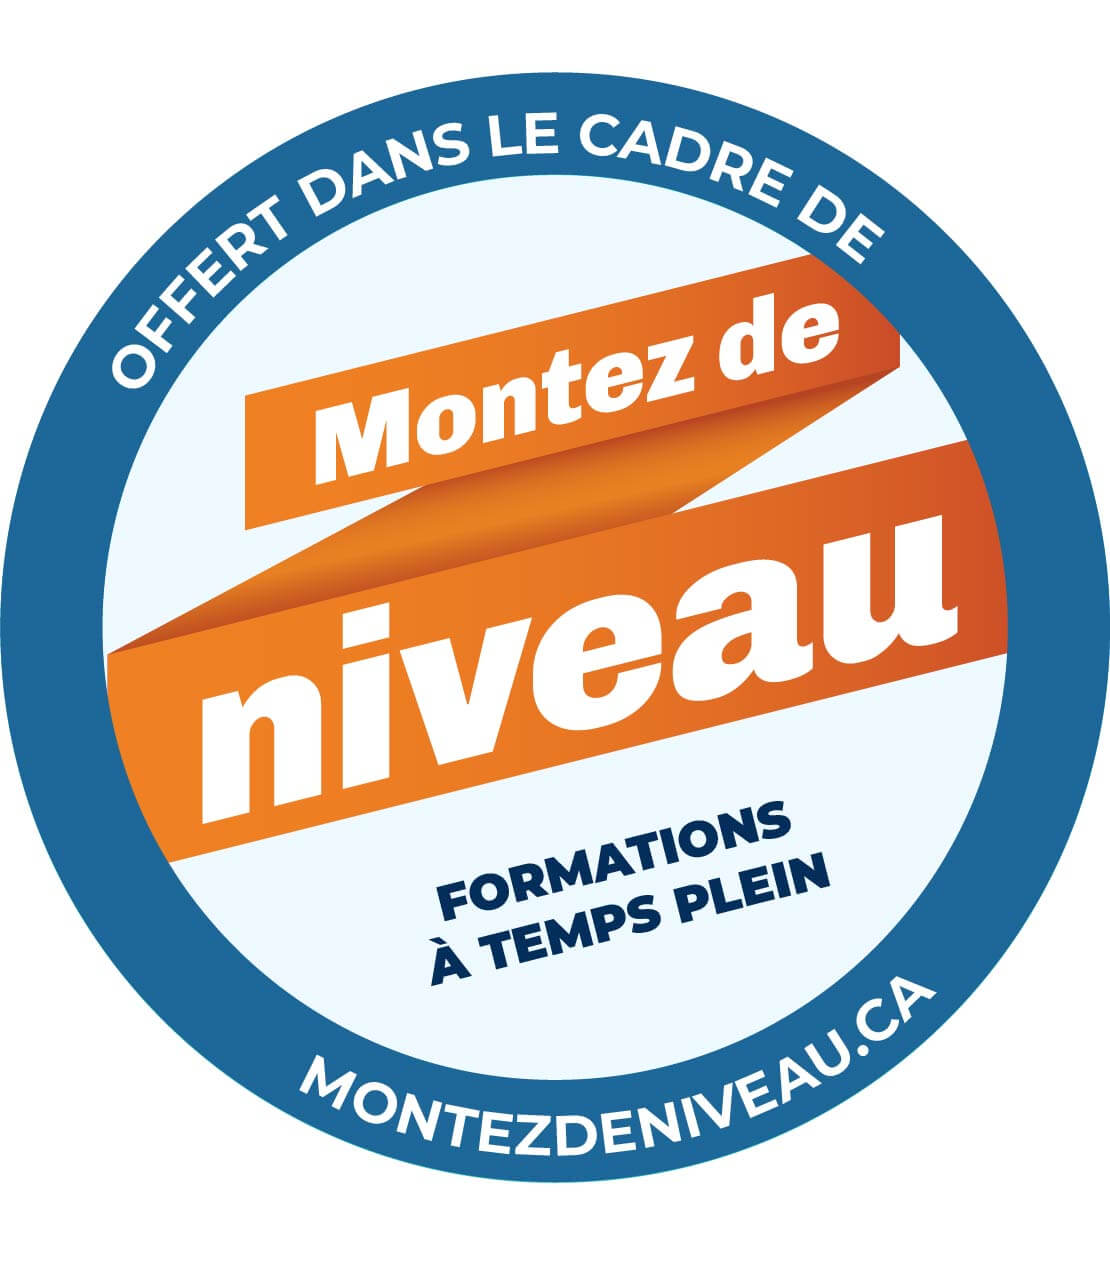 Promotional badge for 'Montez de niveau', a full-time training program, available at montezdeniveau.ca.